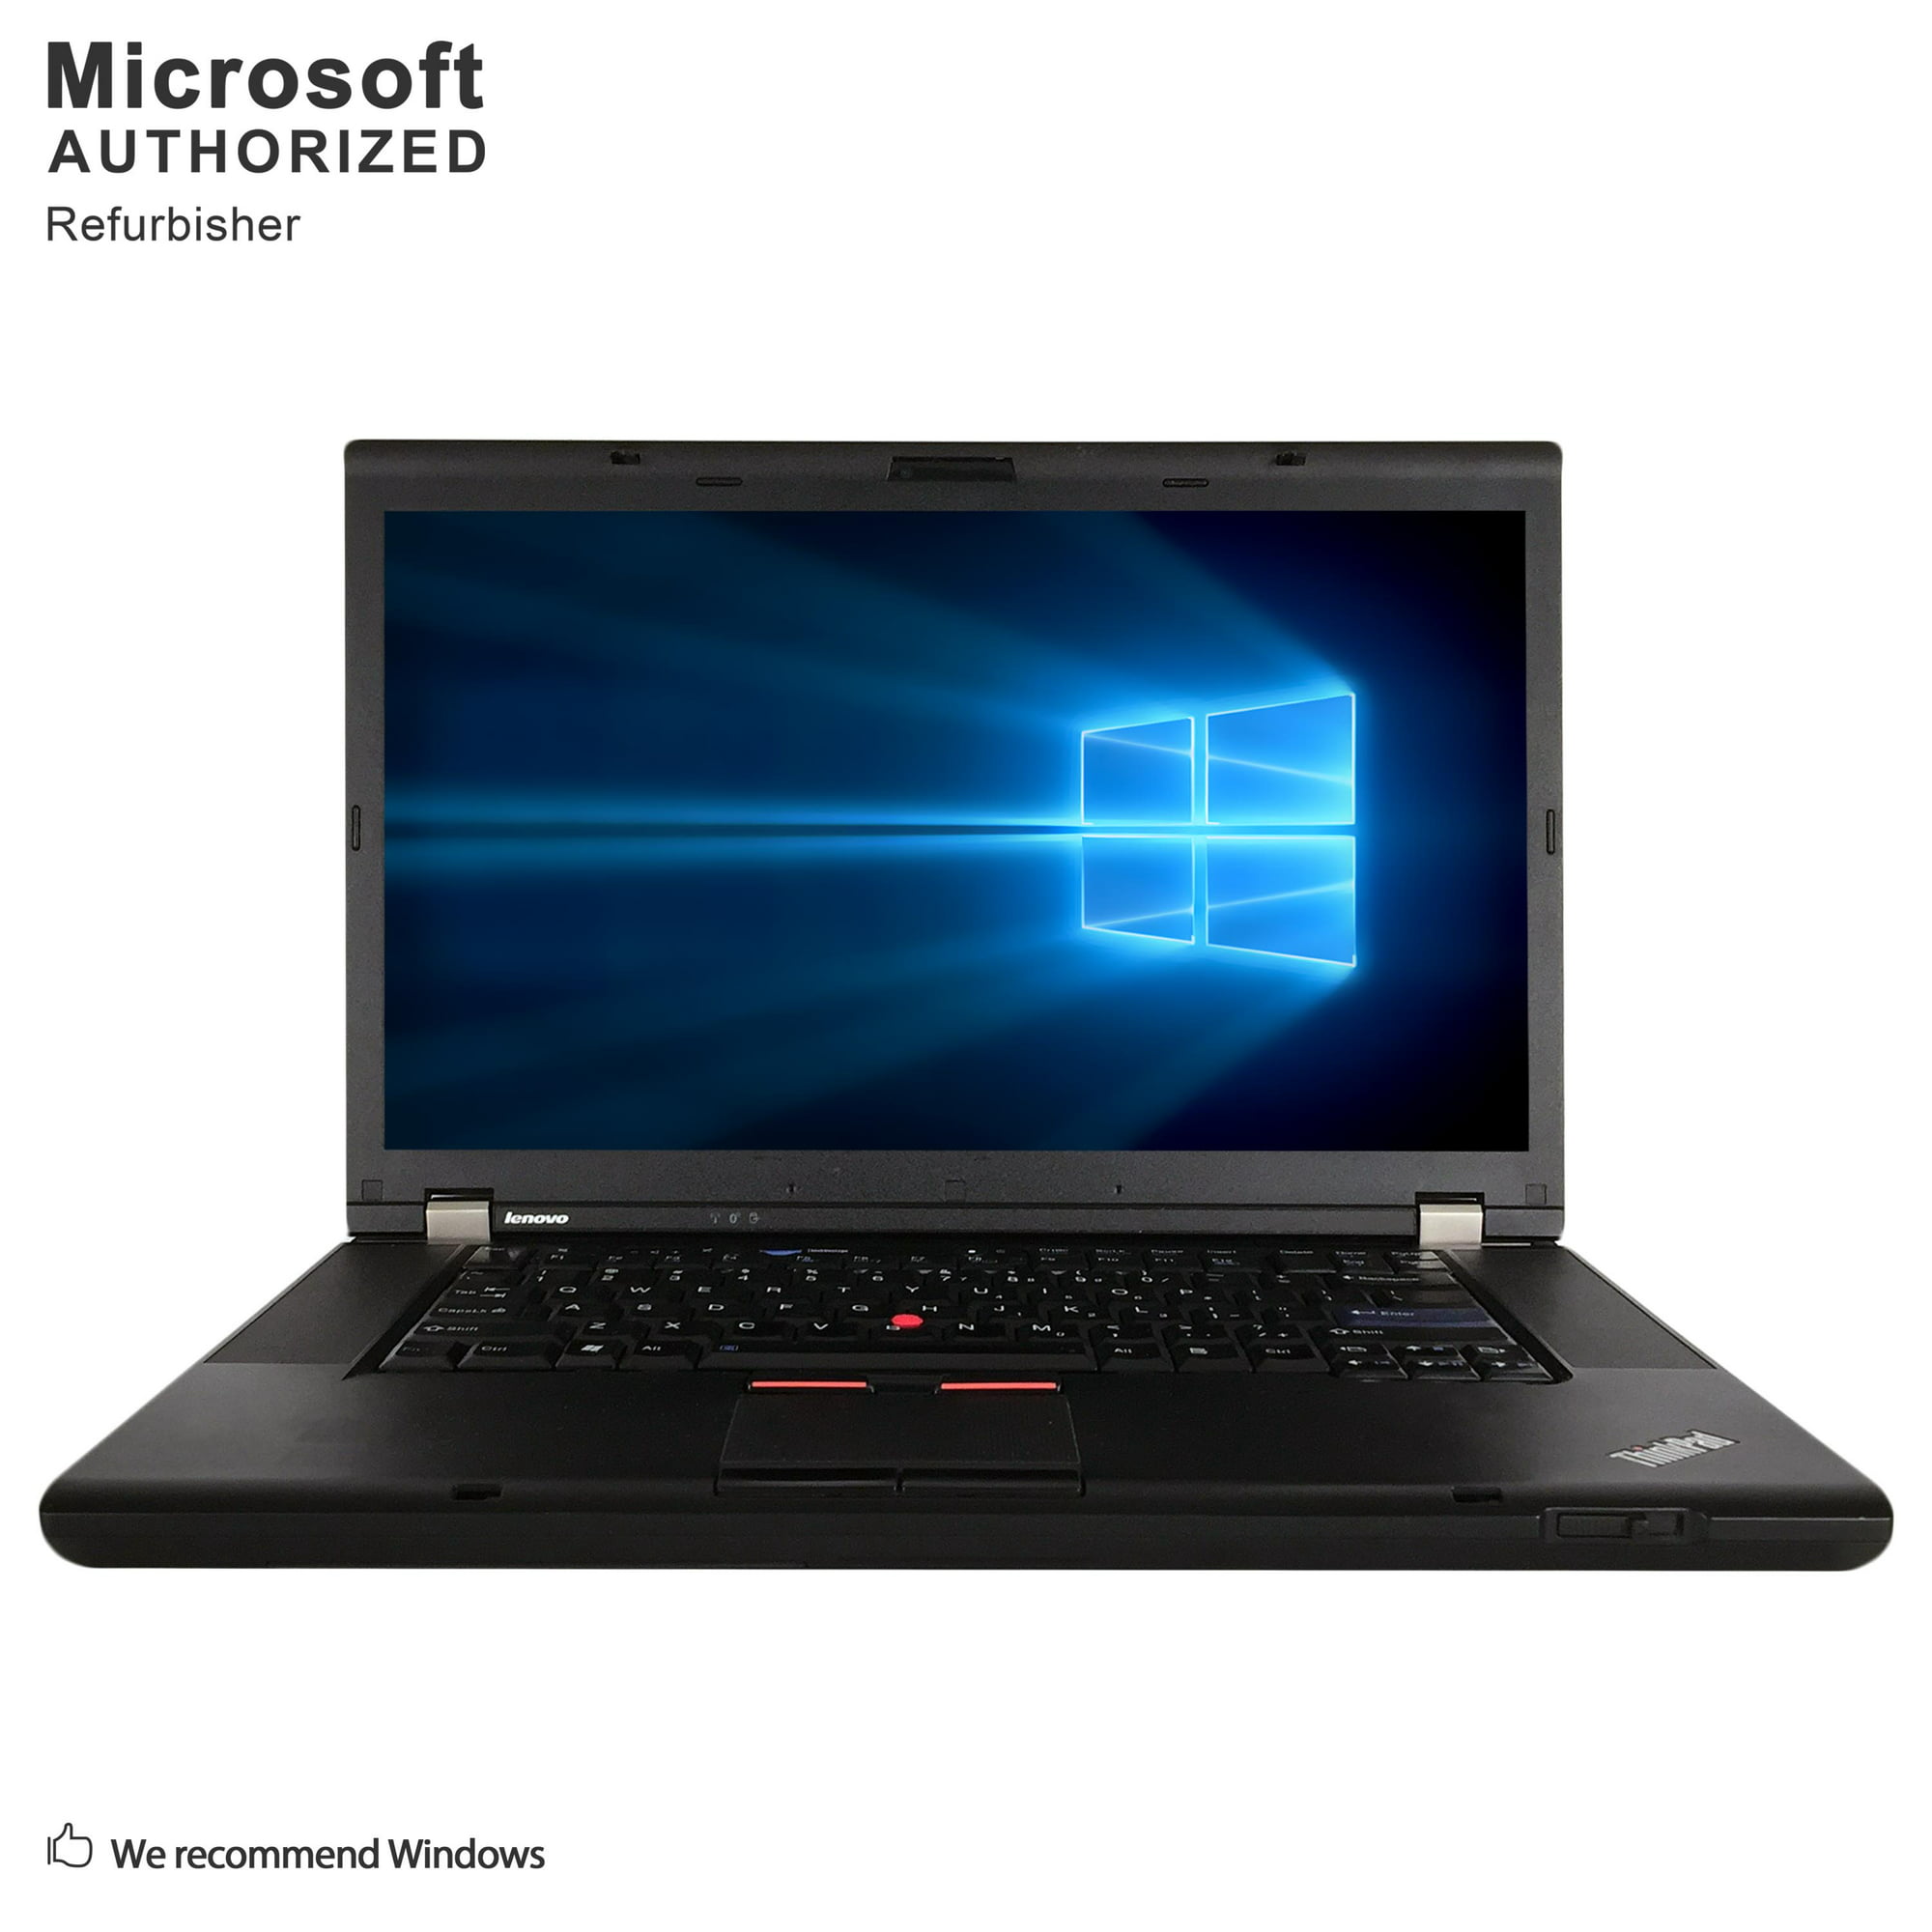 Lenovo ThinkPad W500 15.4" Intel Core 2 Duo T9400 2.53 GHz, 4 GB DDR3 RAM, GB SSD, DVD, VGA, DisplayPort, Windows 10 Pro 64 Bit | Walmart Canada